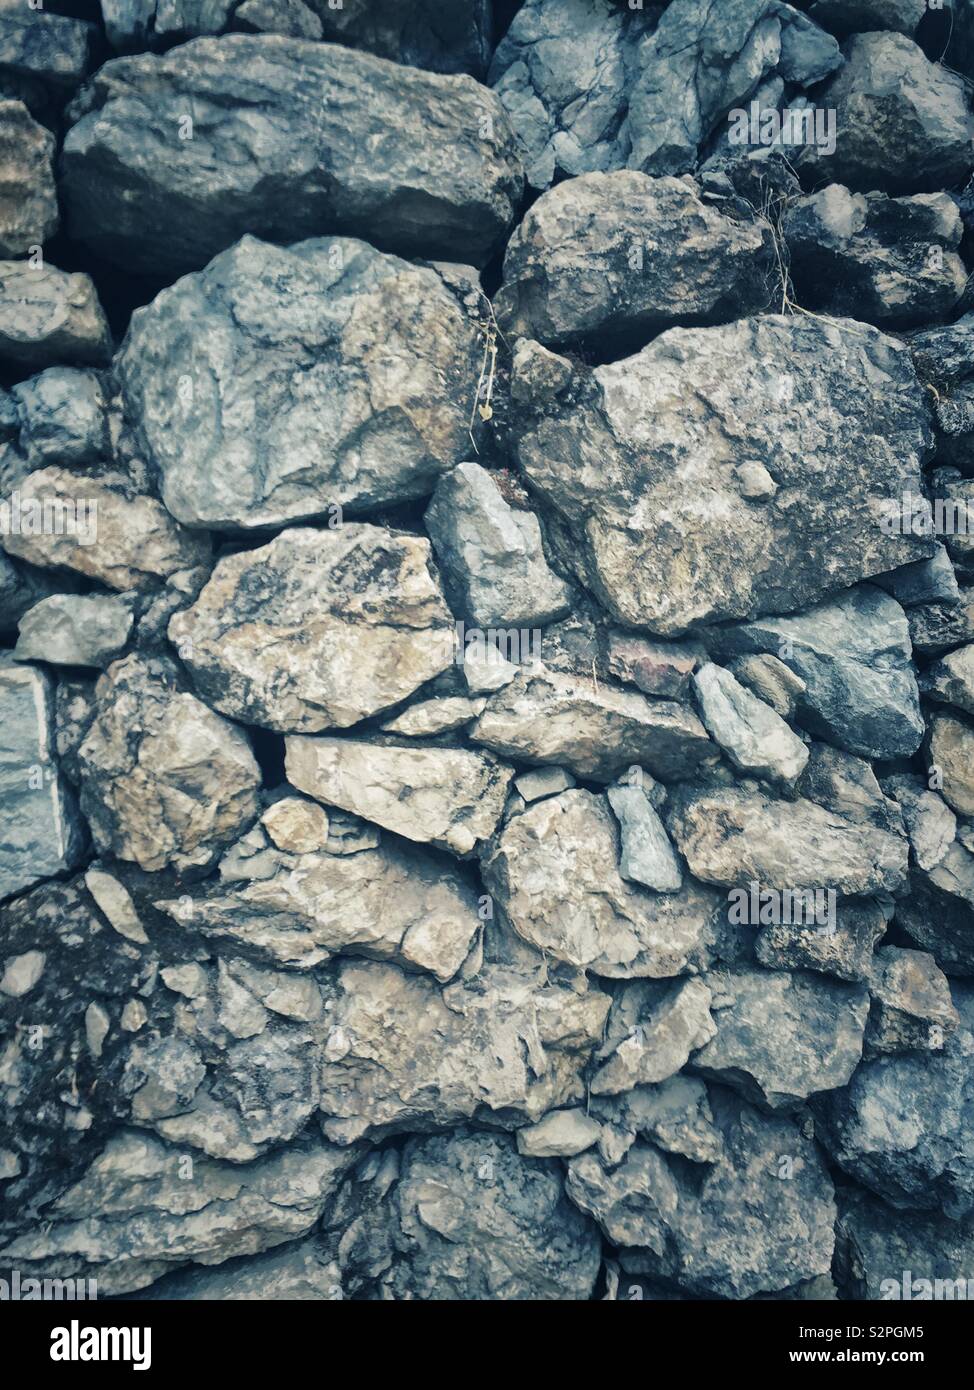 Dry stone wall Stock Photo